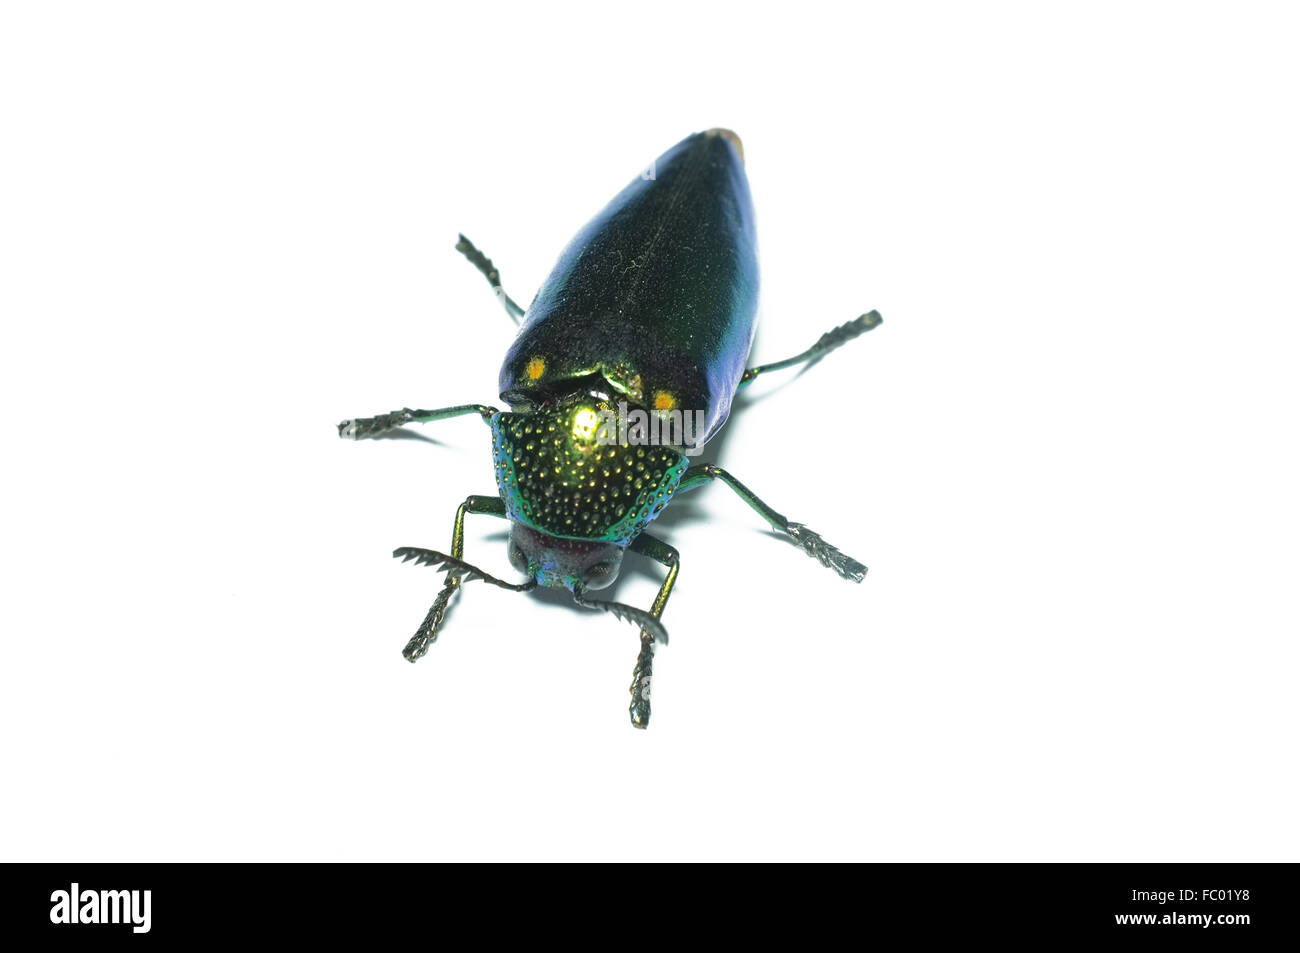 Jewel beetle, Metallic wood-boring beetle in Thailand Stock Photo